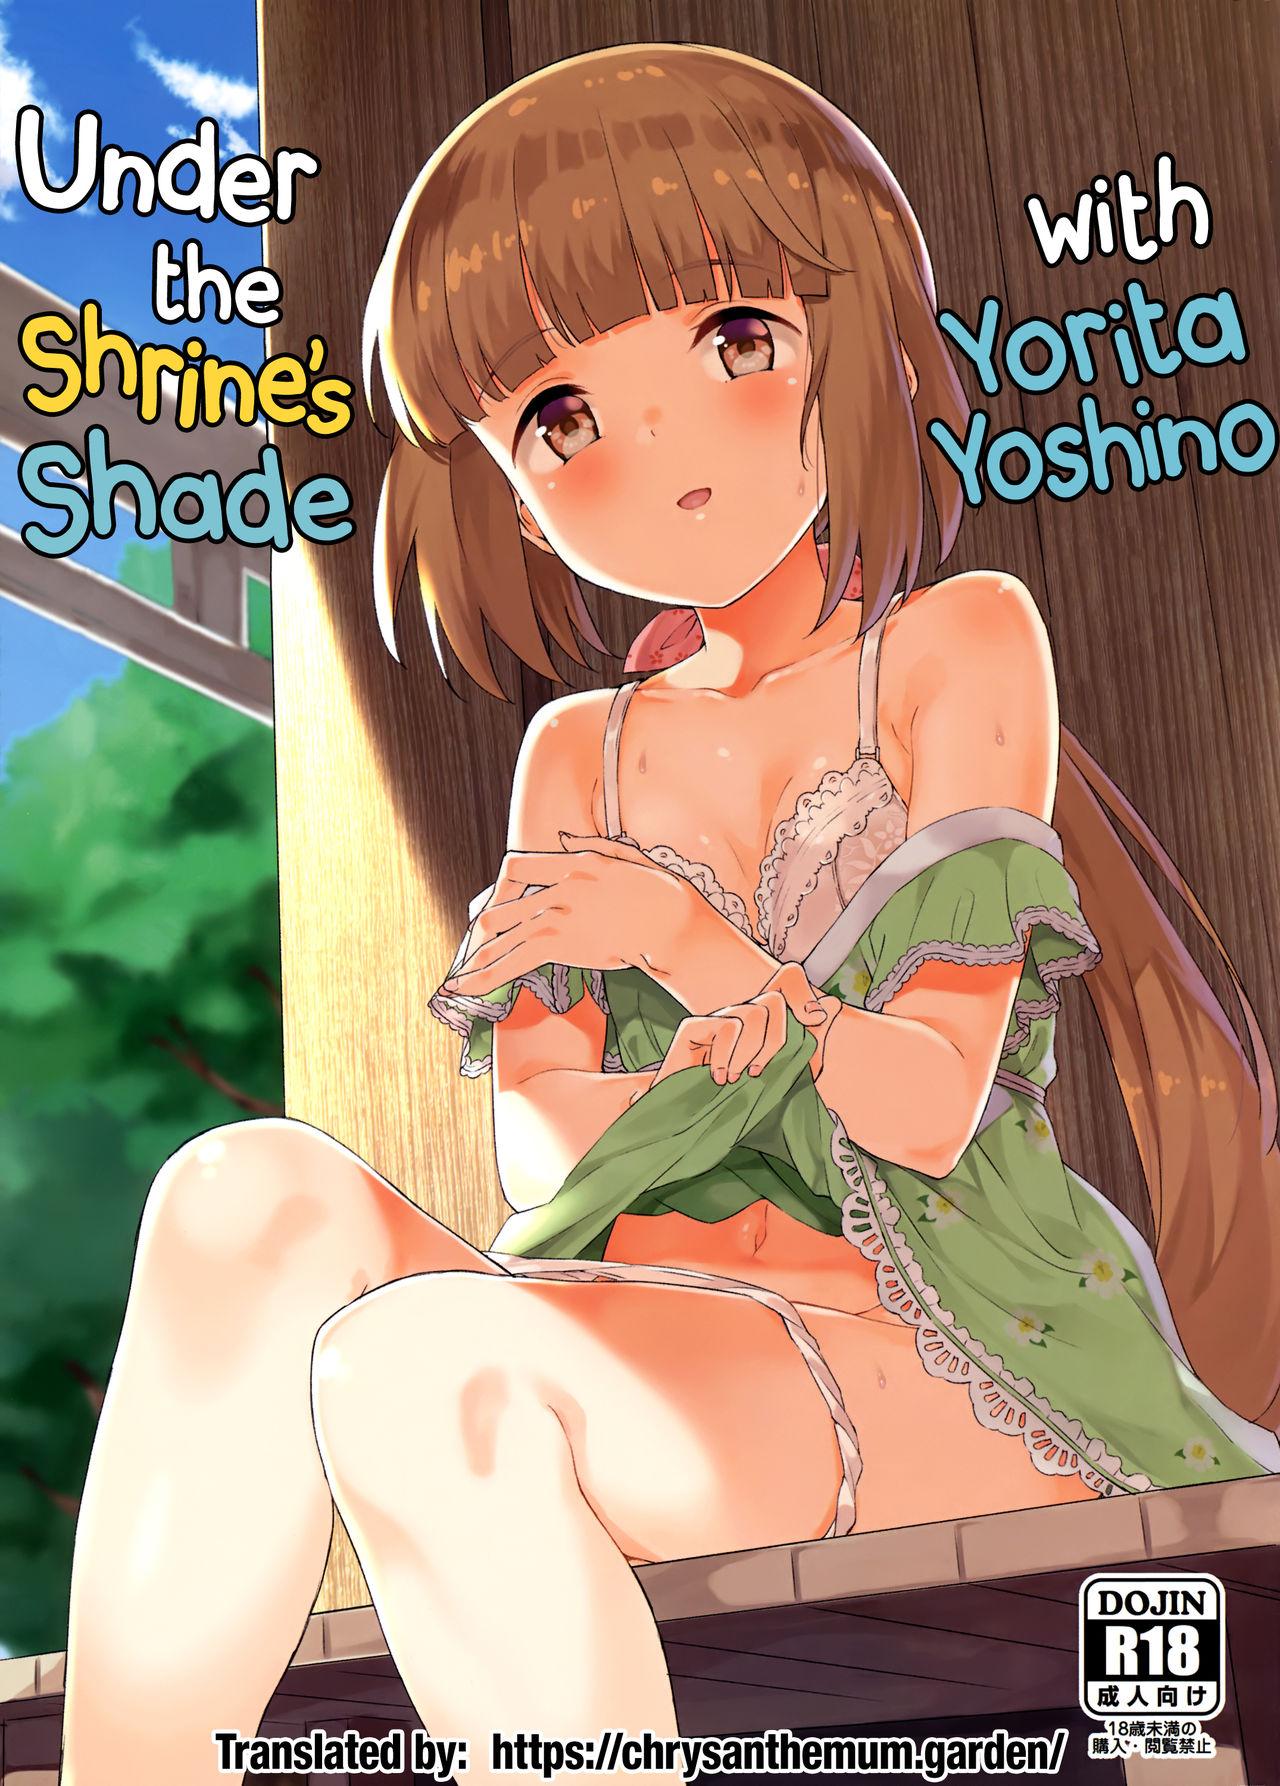 Yorita Yoshino to Yashiro no Hikage de | Under the Shrine’s Shade with Yorita Yoshino 0